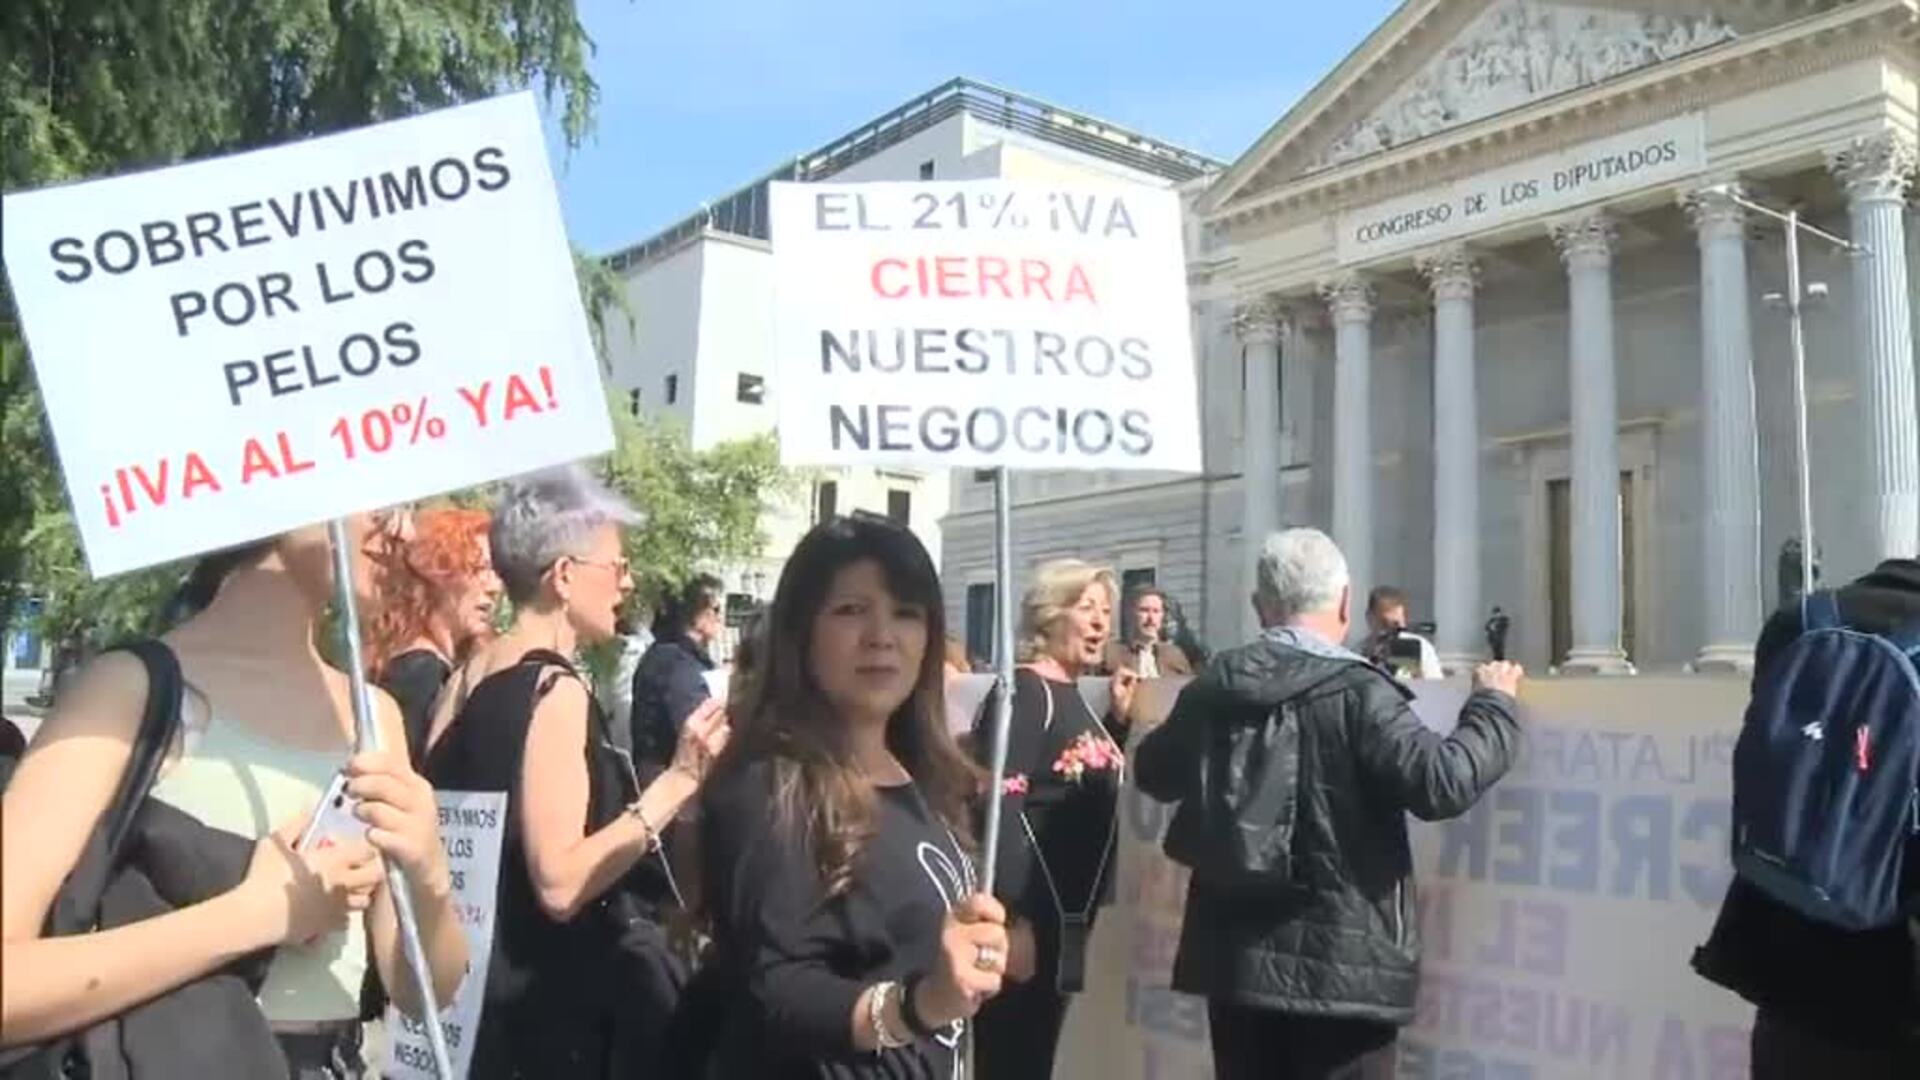 Peluqueros de toda España vuelven a salir a la calle para pedir el IVA reducido